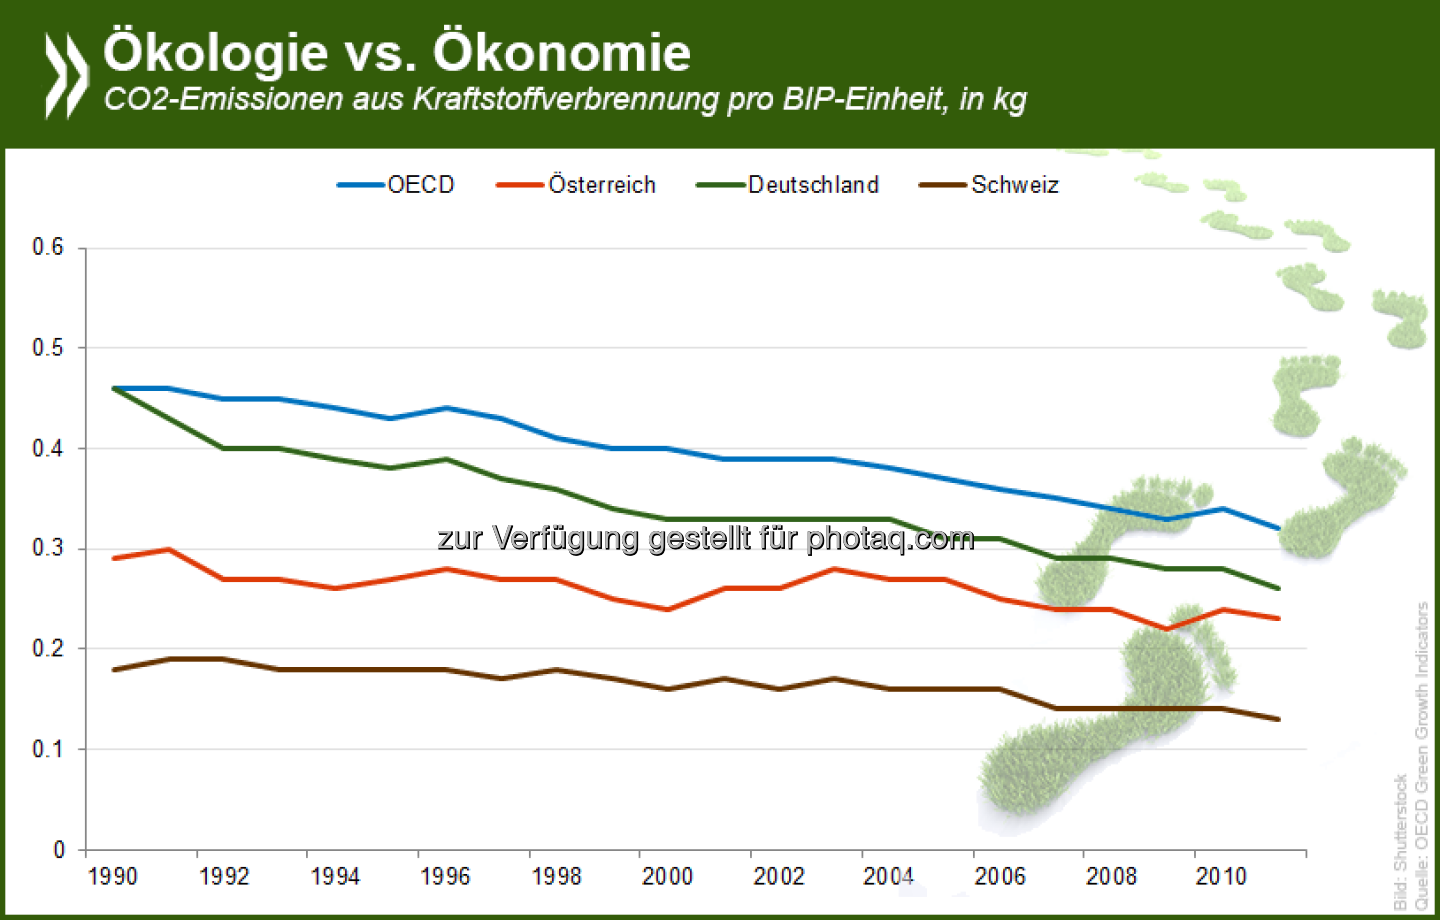 Schweizer Ökosystem: Auf ihre Wirtschaftsleistung bezogen stößt die Schweiz von allen OECD-Ländern am wenigsten CO2 aus. Auch pro Einwohner liegen die Emissionen nur etwa bei der Hälfte des OECD-Wertes.

Mehr Informationen zum Thema und Daten zu allen OECD-Ländern gibt es in unserer interaktiven Grafik: http://bit.ly/SSCUf5  Source: http://twitter.com/oecdstatistik